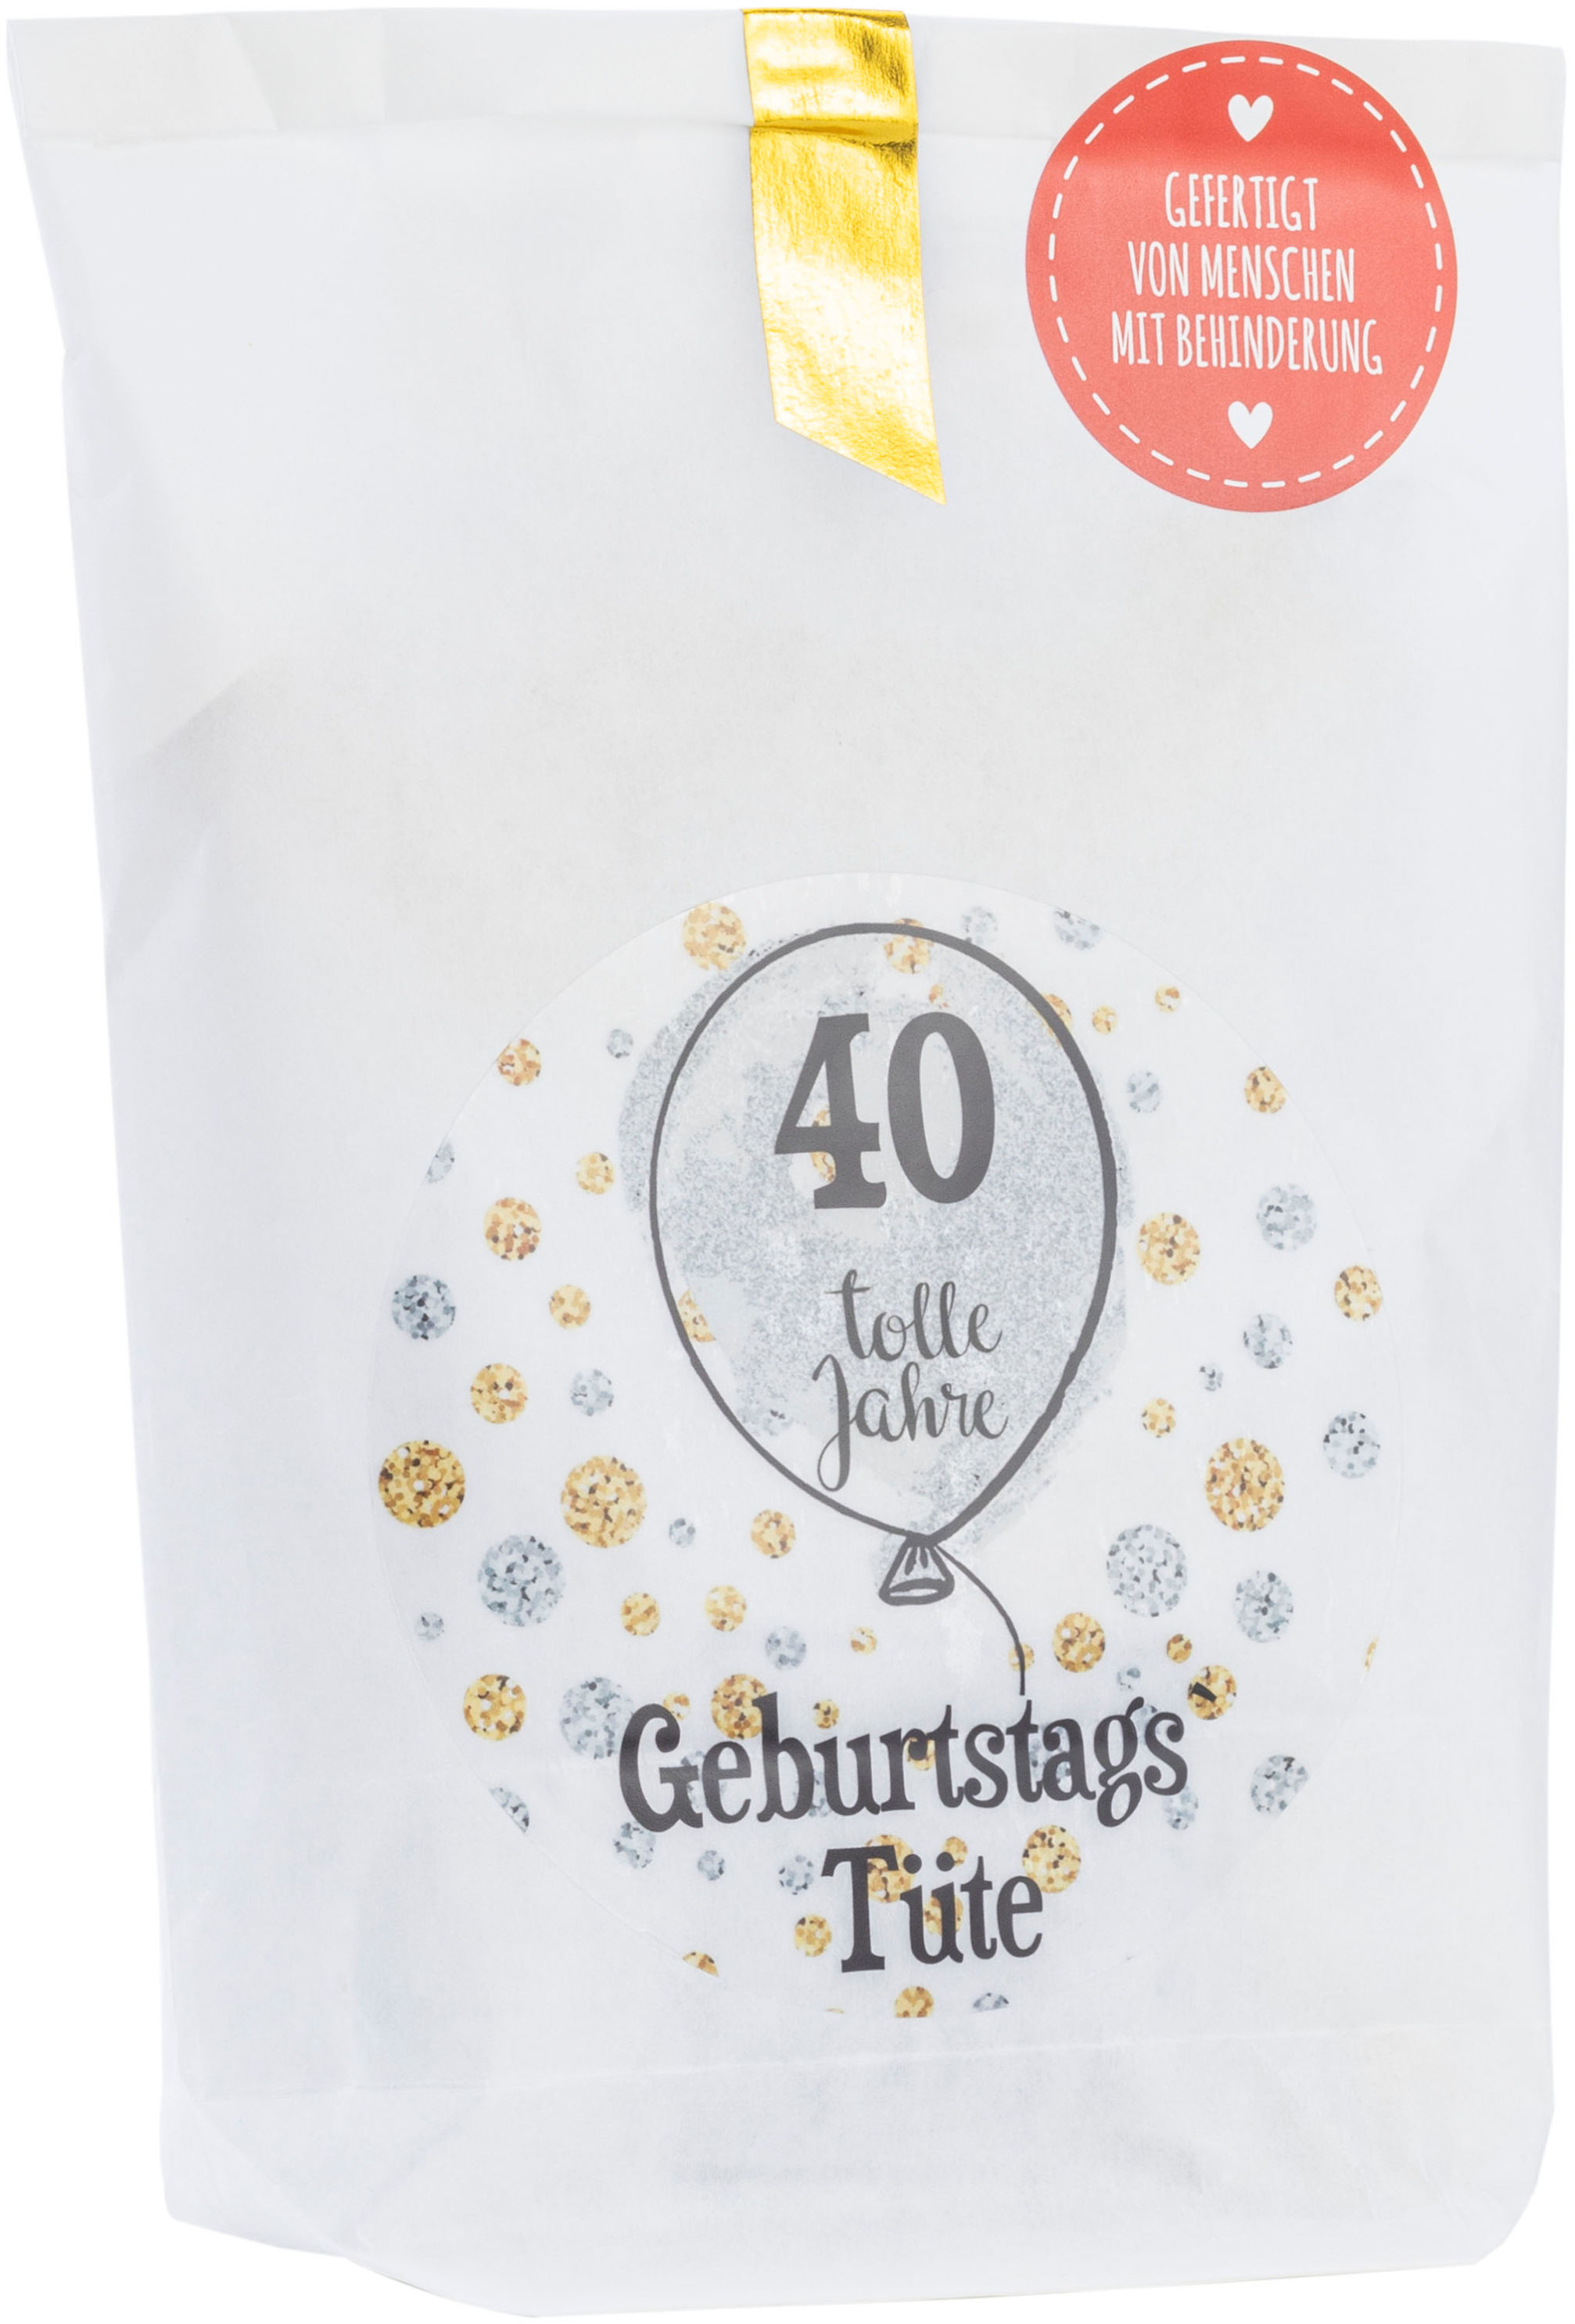 Erste Hilfe Tasche zum 40. Geburtstag: Jetzt kaufen und Freunde  überraschen! –